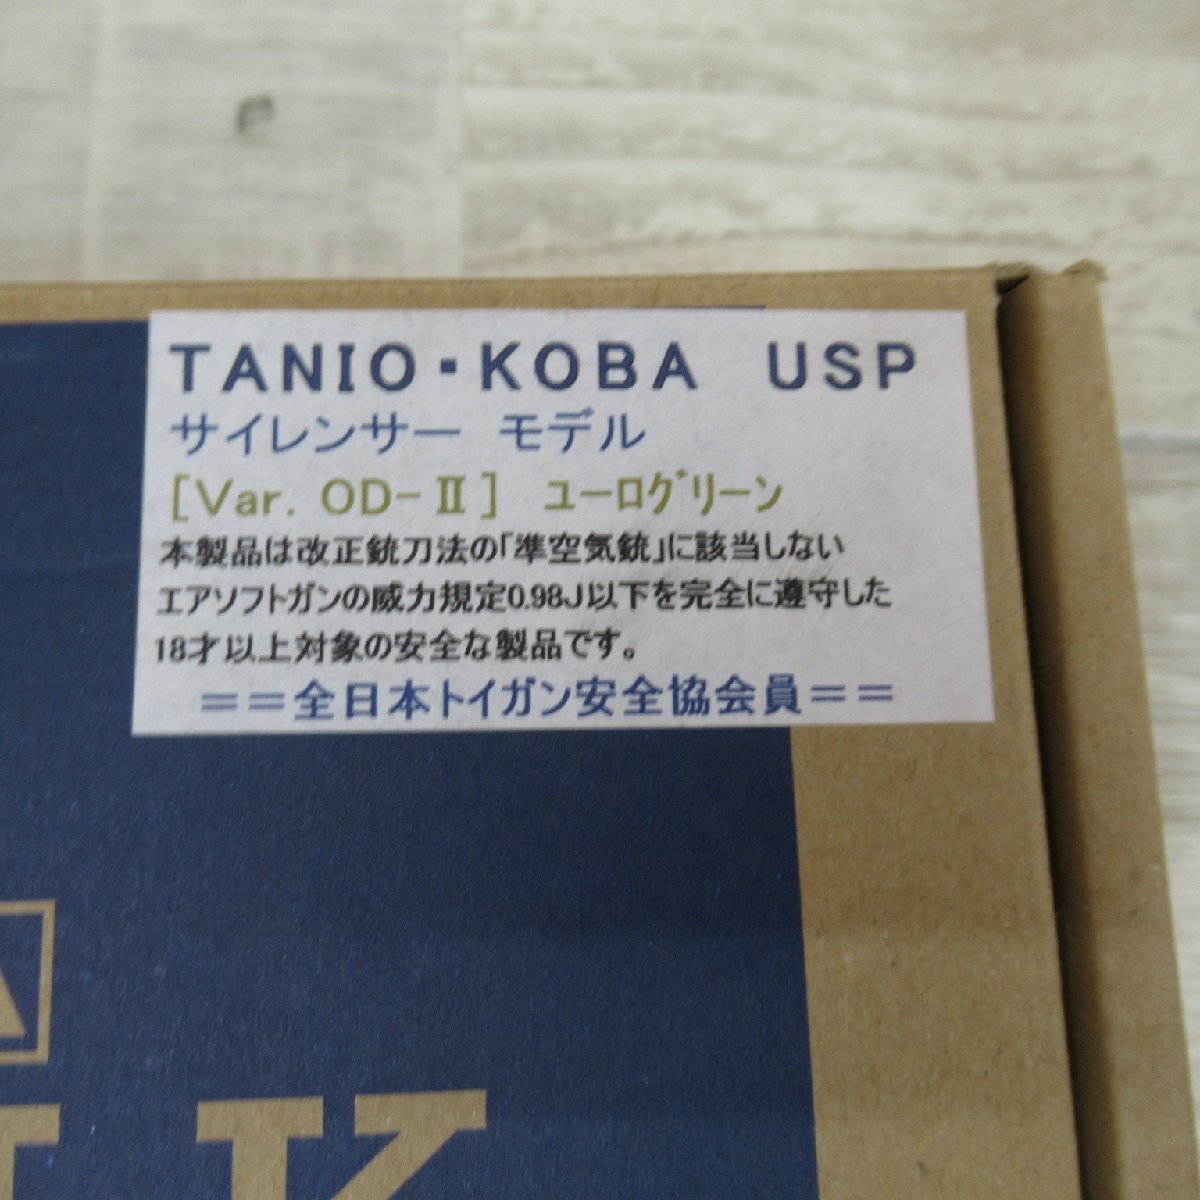 TC1118/TANIO KOBA USP/BLK サイレンサーモデル Ver OD-Ⅲ ユーログリーン 40 TACTICAL SD タニオ・コバ ブローバックサイレンサーの画像2